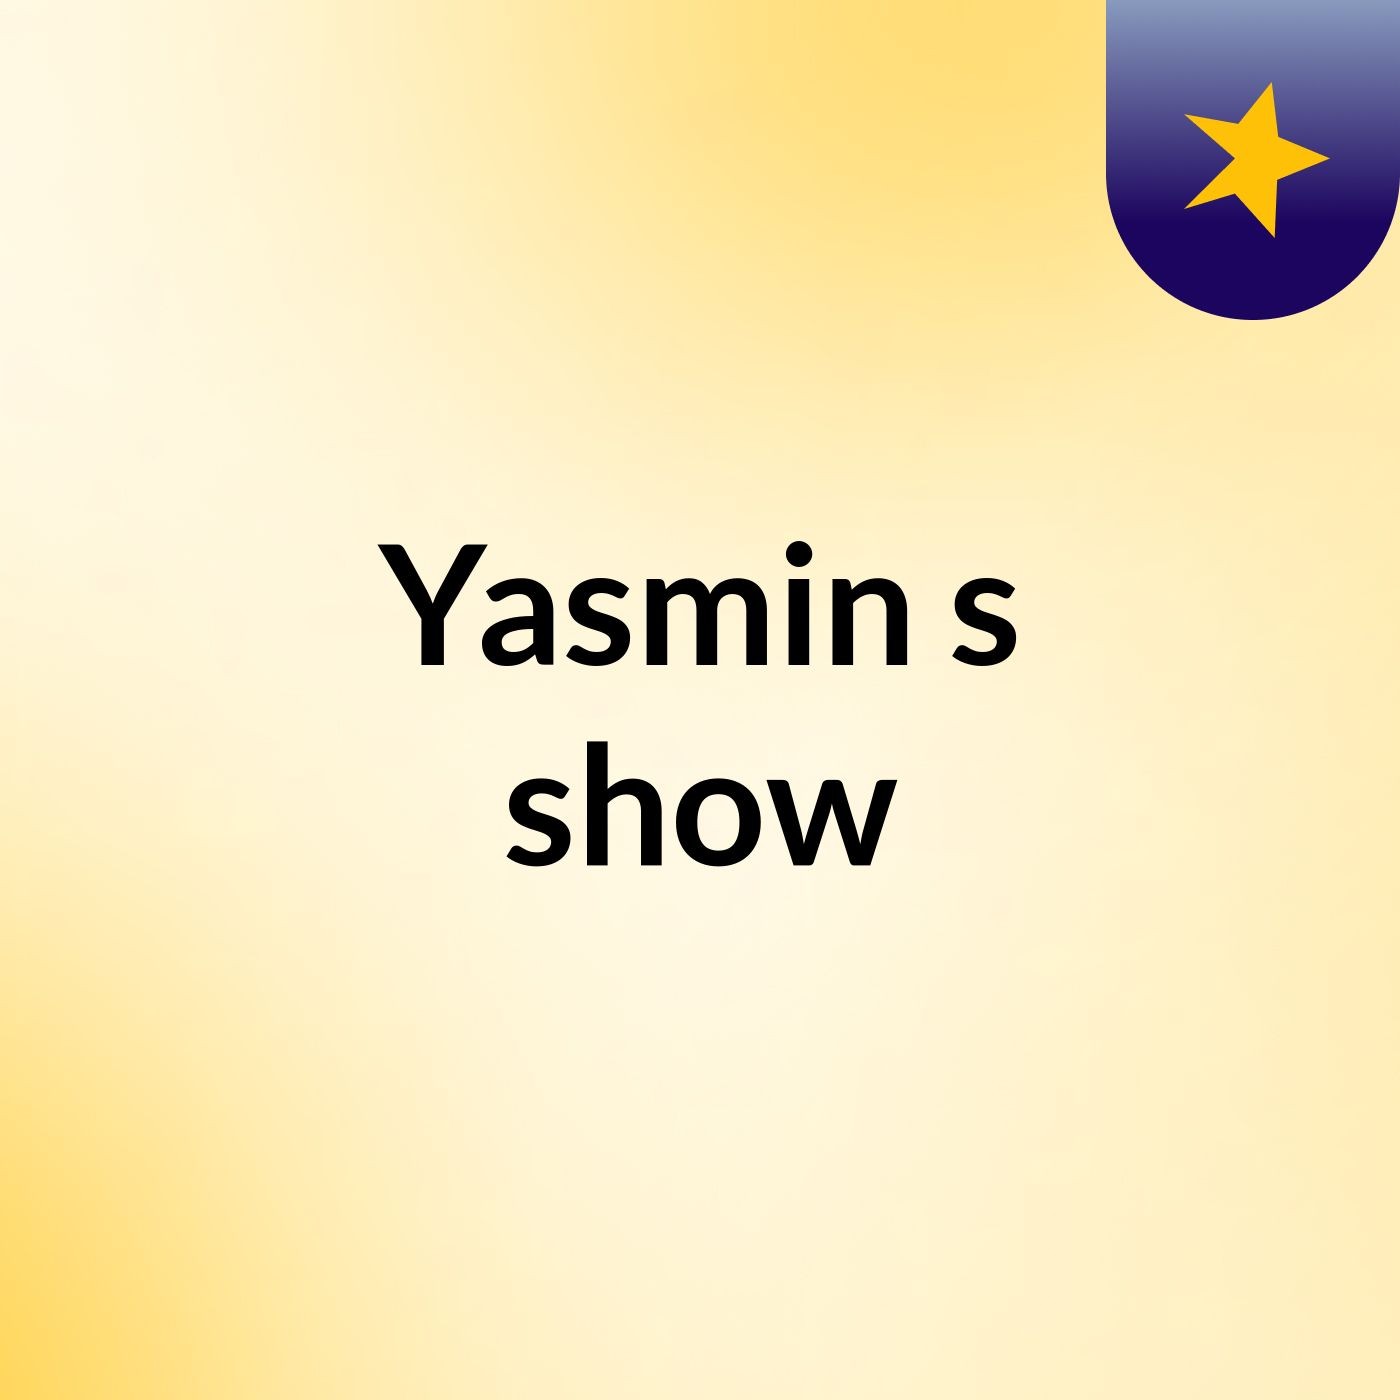 Yasmin's show